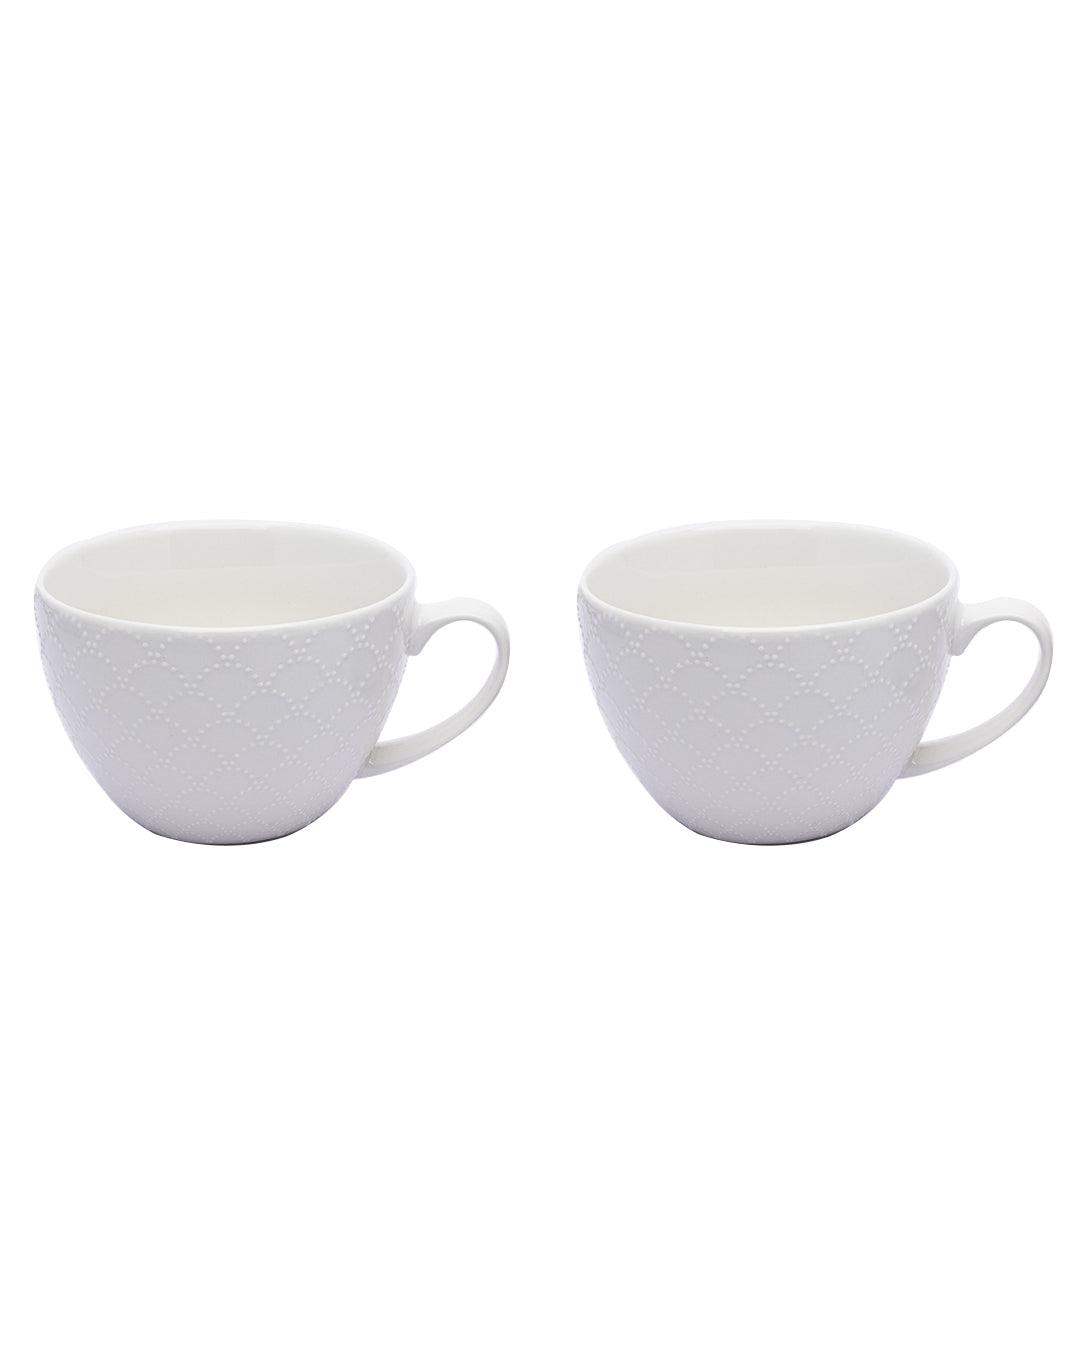 Market99 Honey Embossed Tea & Coffee Mug - Set of 2, 460 mL - MARKET 99